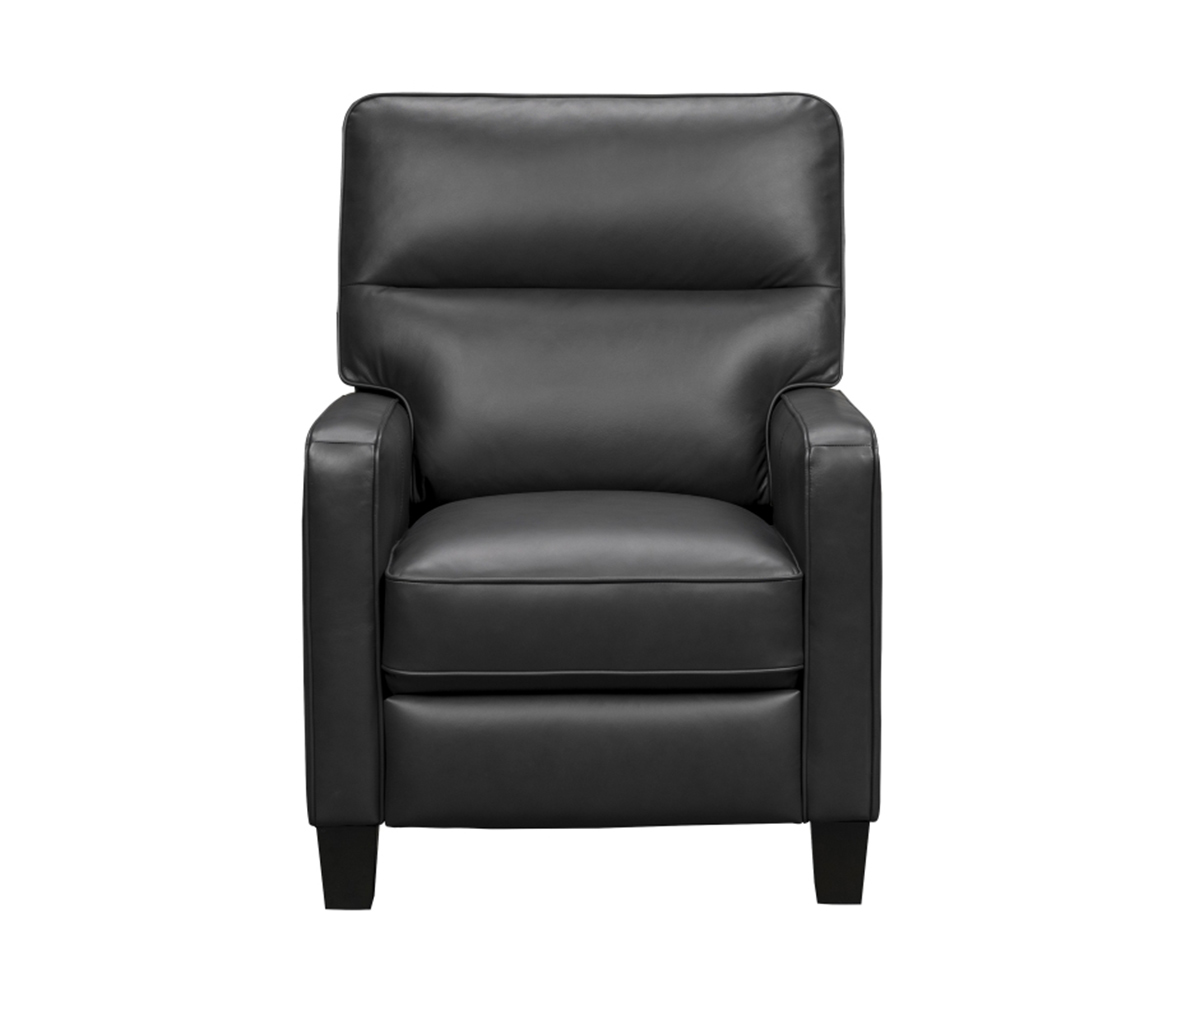 Barcalounger Stewart Recliner Chair - Erin Blue/Leather Match